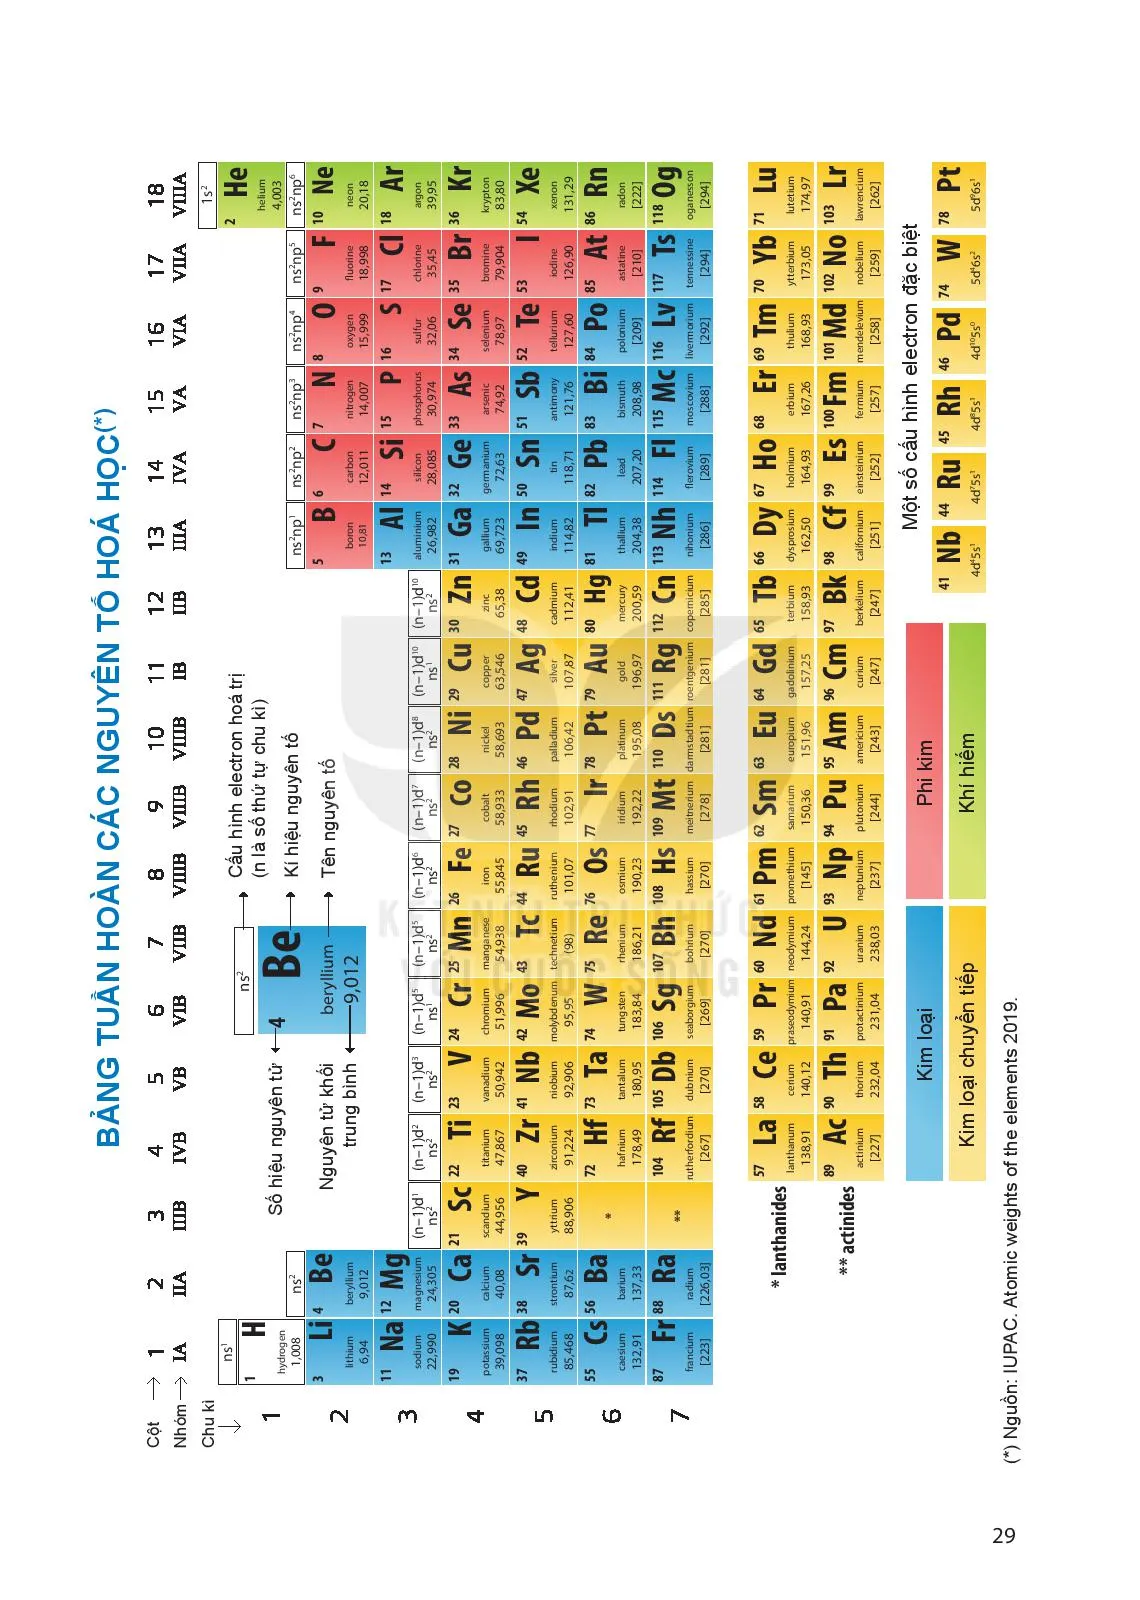 Bài 5. Cấu tạo của bảng tuần hoàn các nguyên tố hoá học